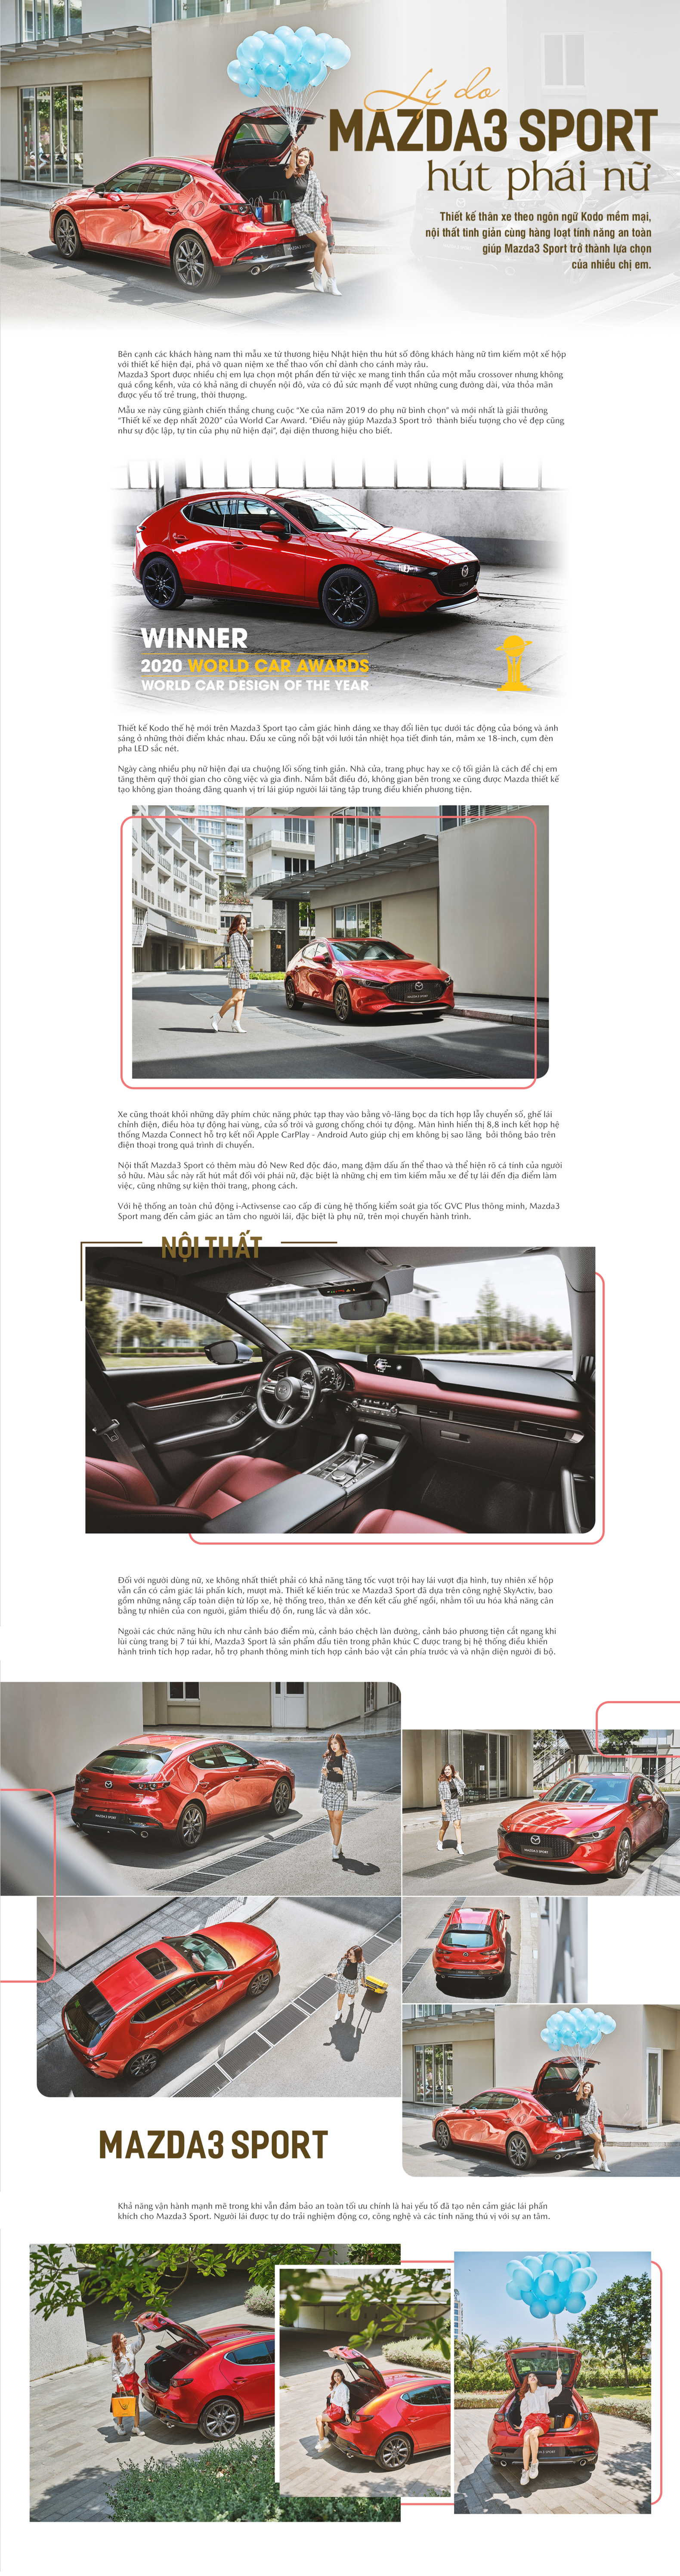 Xe Mazda3 Sport - thể thao và hiện đại, sẽ đưa bạn đến một trải nghiệm lái xe vô cùng thú vị và đầy phấn khích. Hãy xem hình ảnh và khám phá những tính năng nổi bật của chiếc xe này.